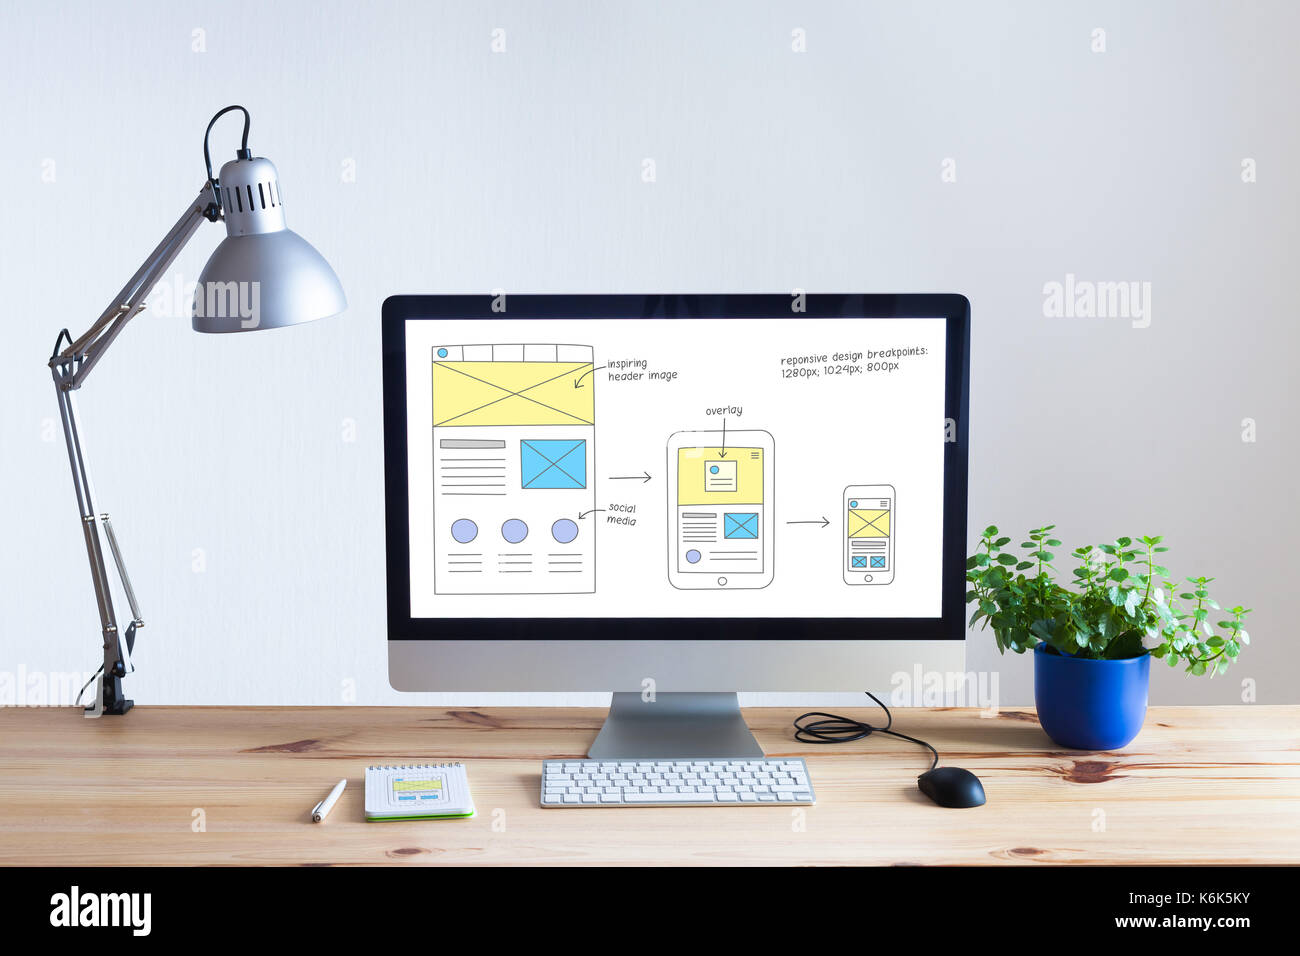 Reaktionsschnelle web design Entwicklung Technologie Konzept mit Desktop Computer in moderne, helle Büro- und website Drahtmodell Skizze Layout auf dem Bildschirm, nobo Stockfoto